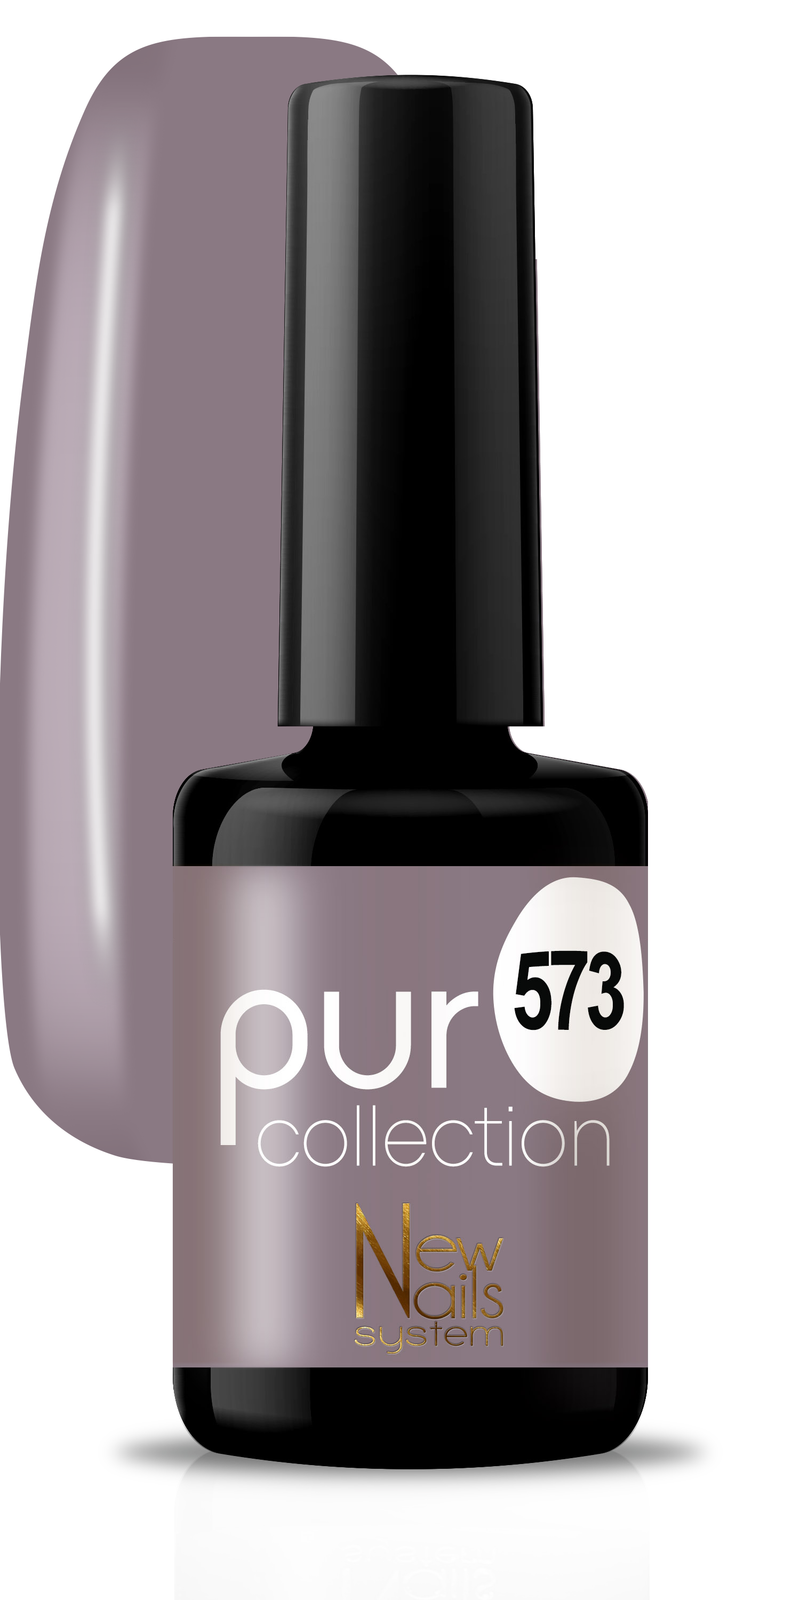 Puro collection 573 colore Black & White semipermanente 5ml